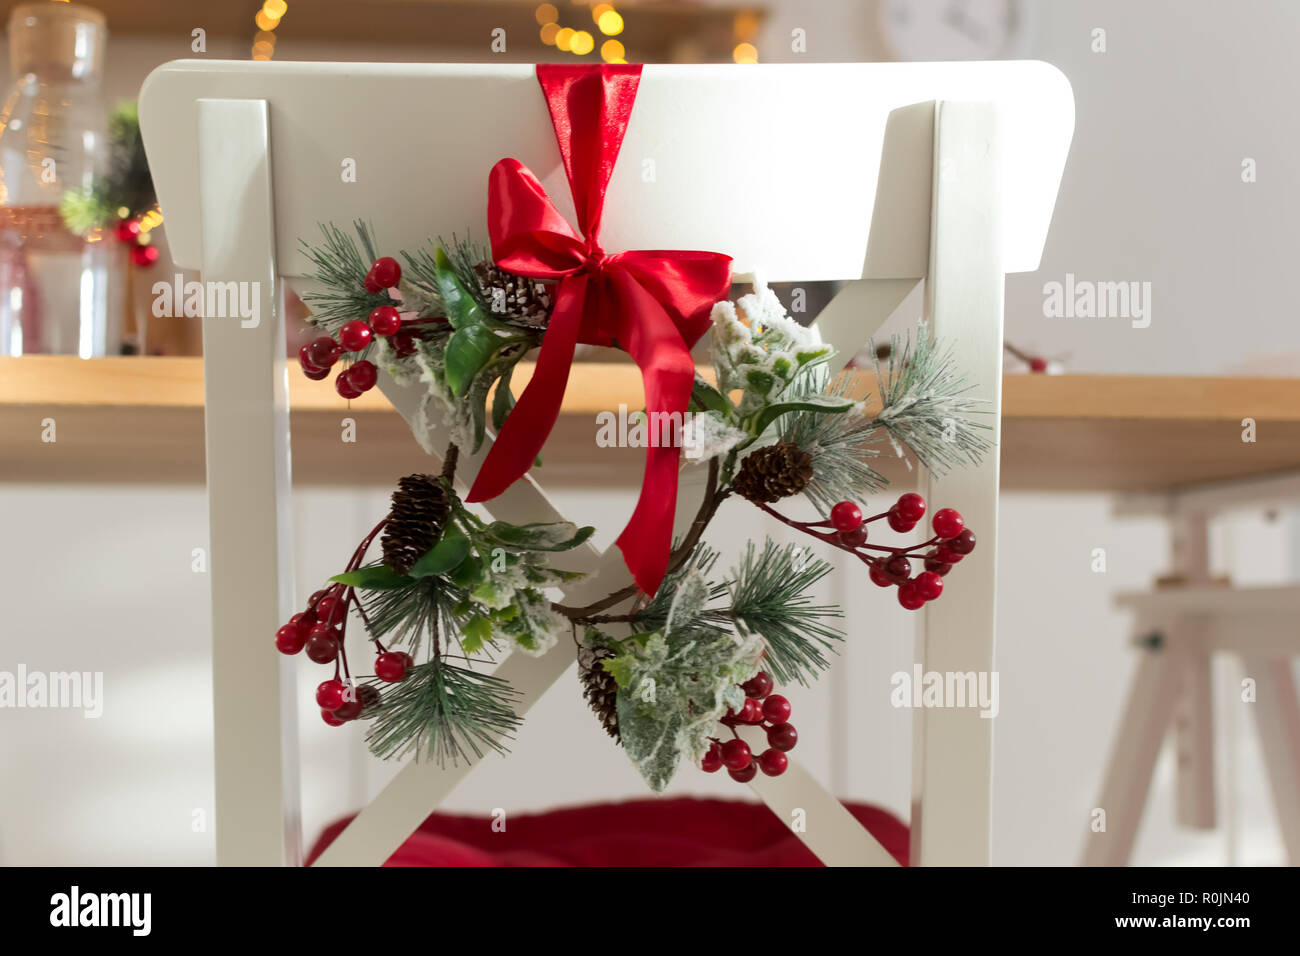 Gemütlich eingerichtet mit Weihnachtsschmuck mit roter Schleife und Tannenzweigen weiße Küche Stuhl Holz. Neues Jahr 2019 Stockfoto